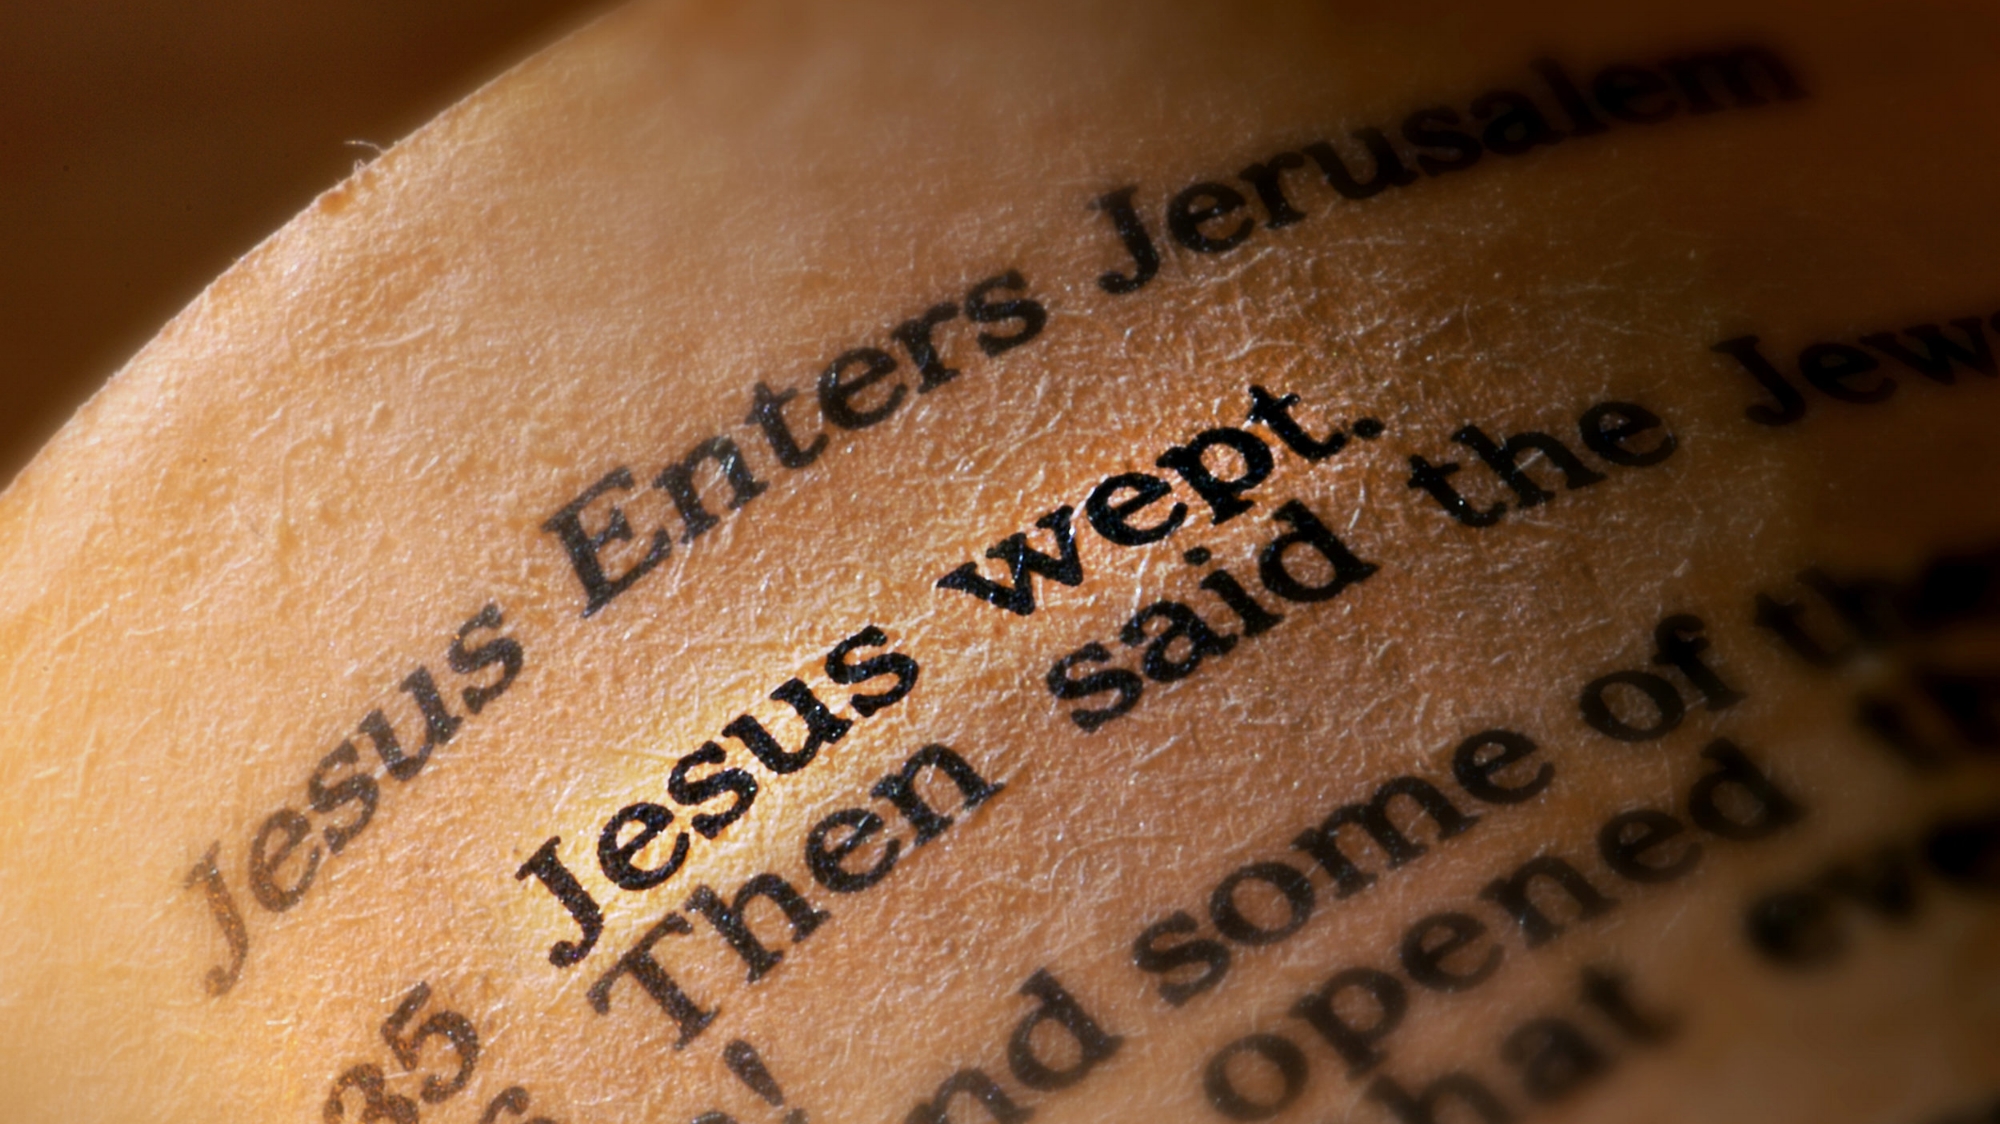 Why did Jesus weep?